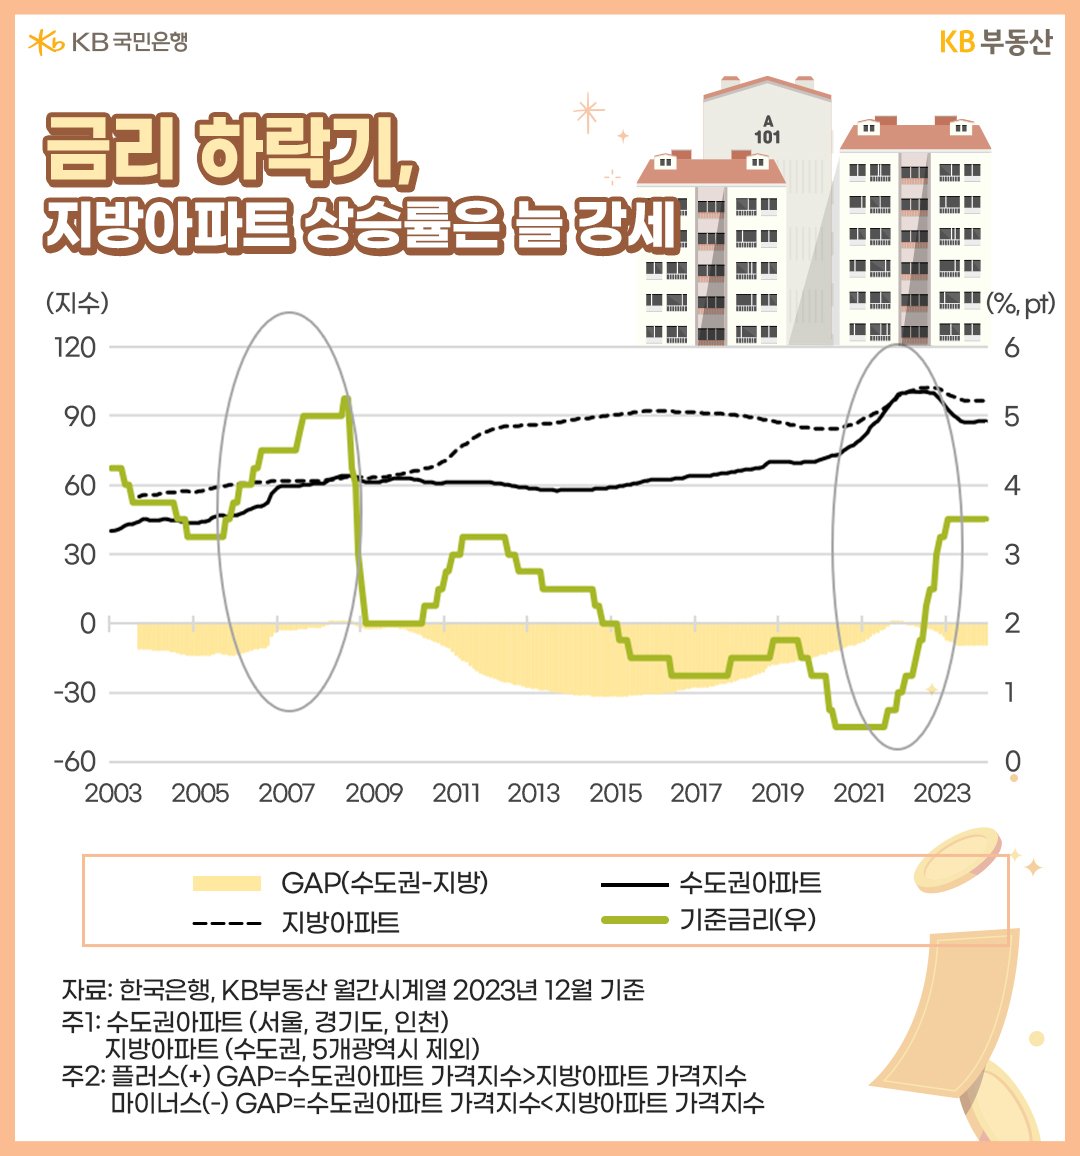 '금리 하락기', '지방아파트' 상승률을 나타내는 이미지이다. 수도권아파트와 지방아파트의 상승그래프가 나타나 있다.